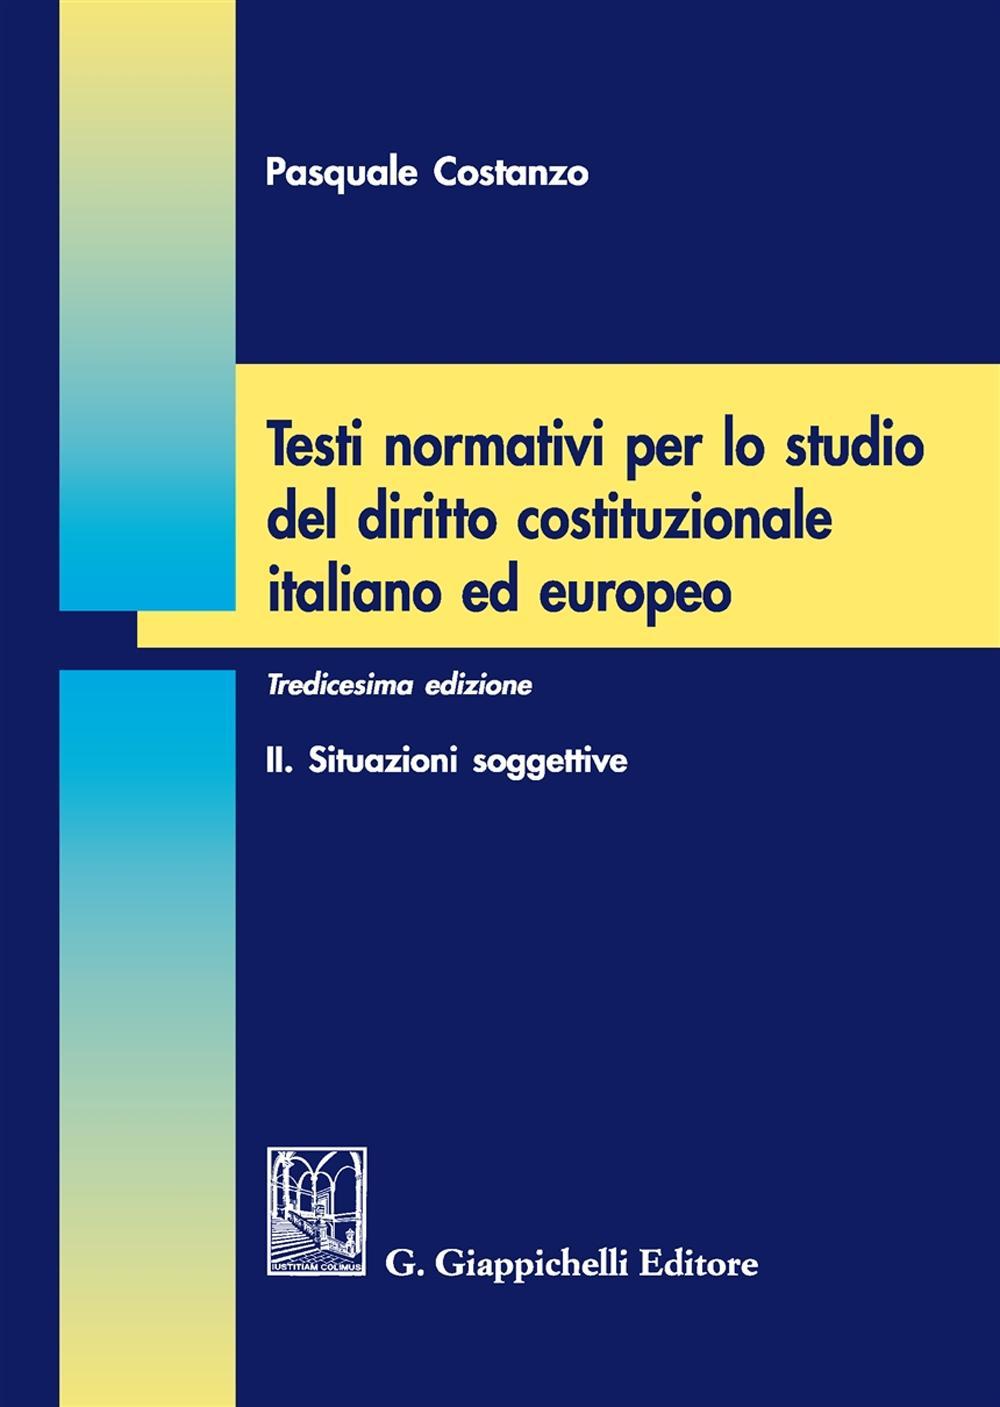 Testi normativi per lo studio del diritto costituzionale italiano ed europeo. Vol. 2: Situazioni soggettive